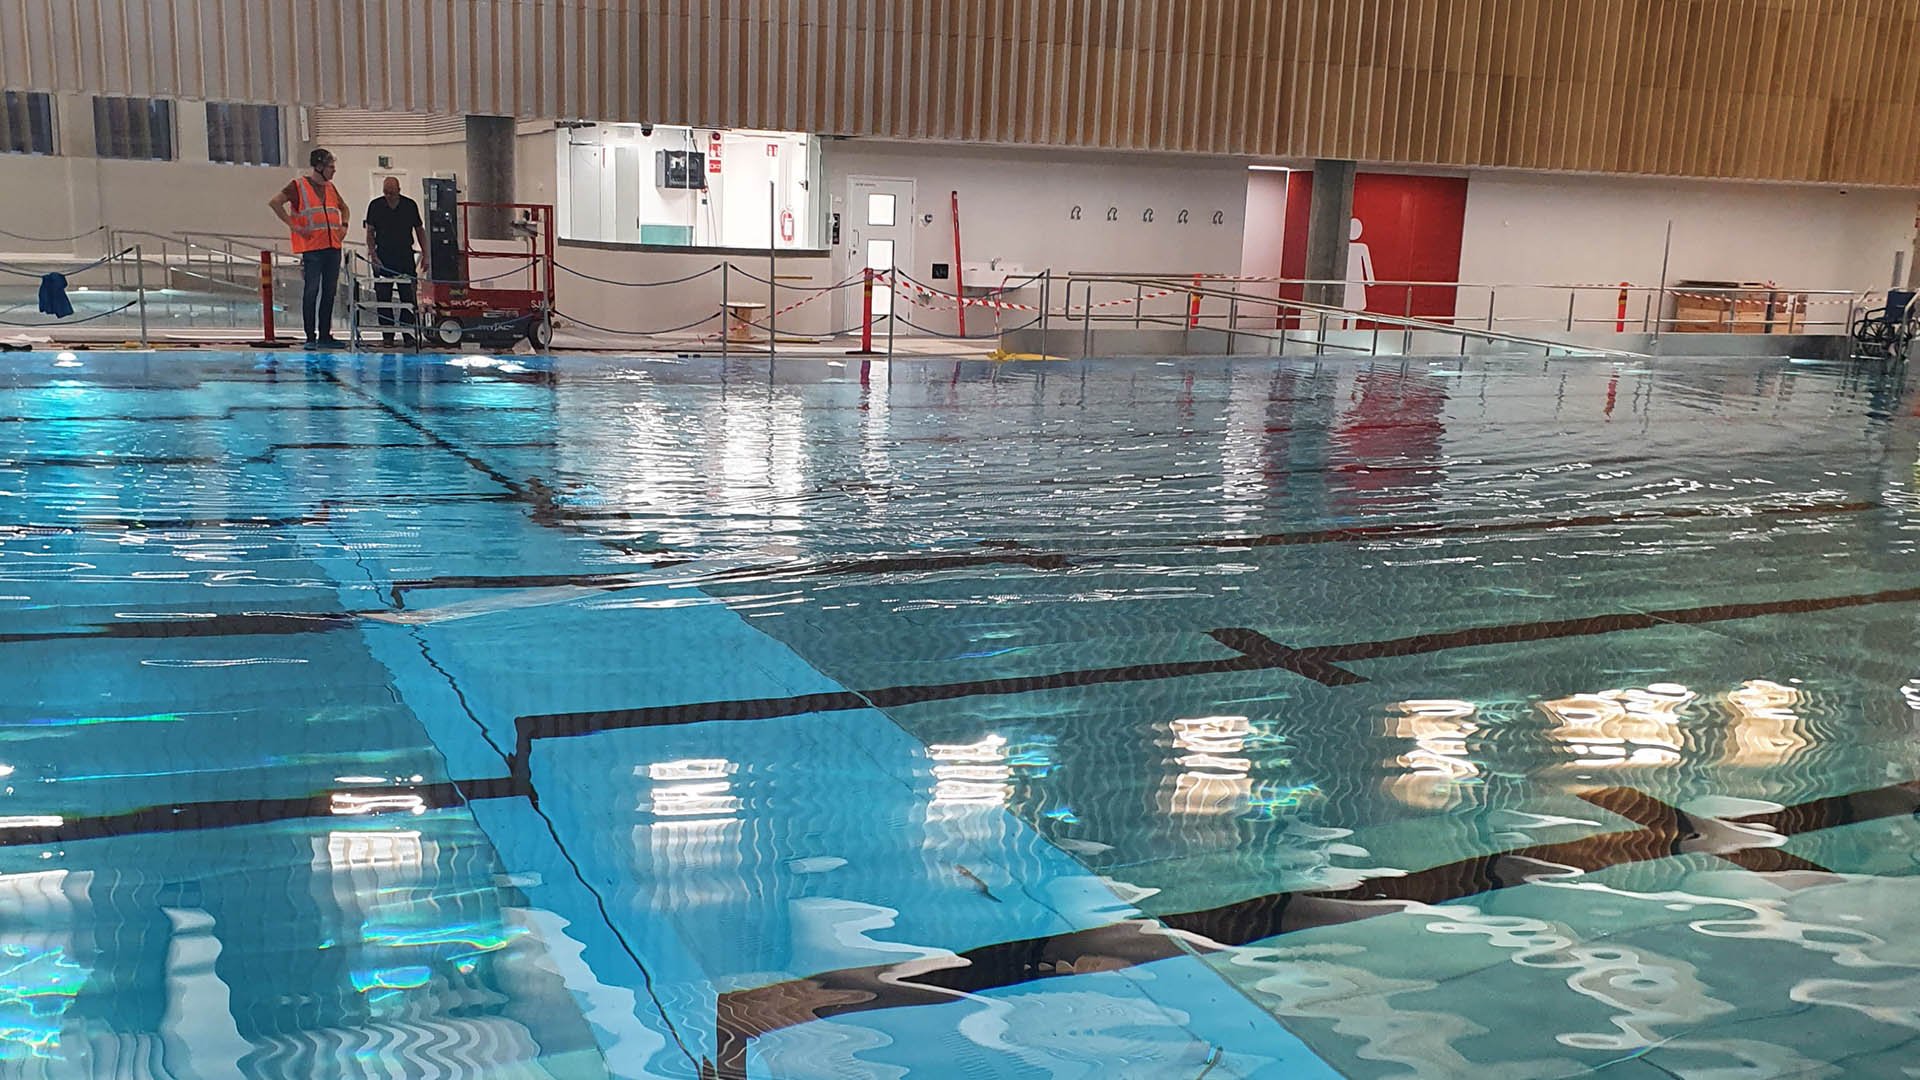 Matinkylä indoor swimming pool, Espoo